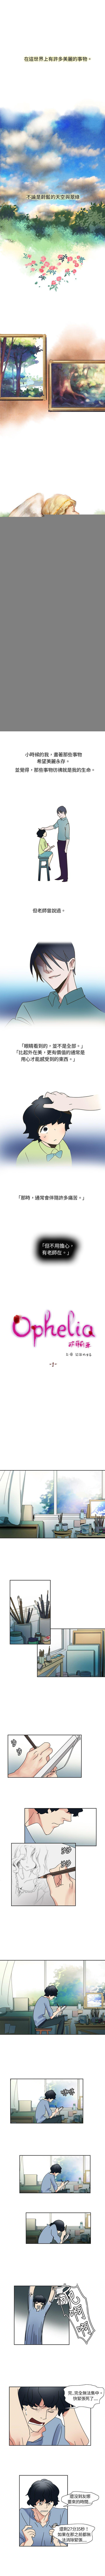 歐菲莉亞 1-51 0